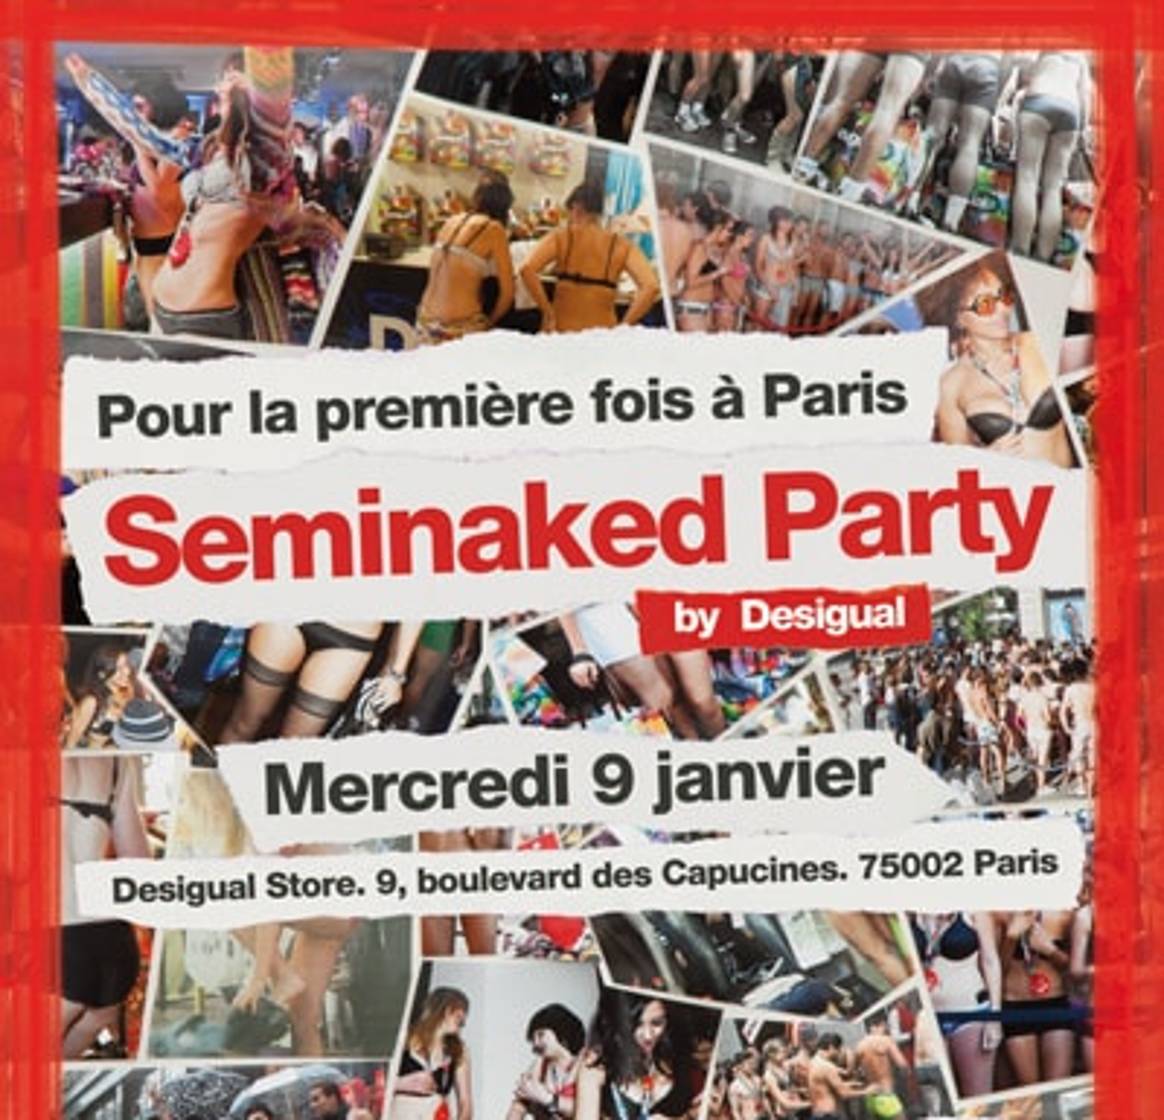 Desigual : naked party à Paris